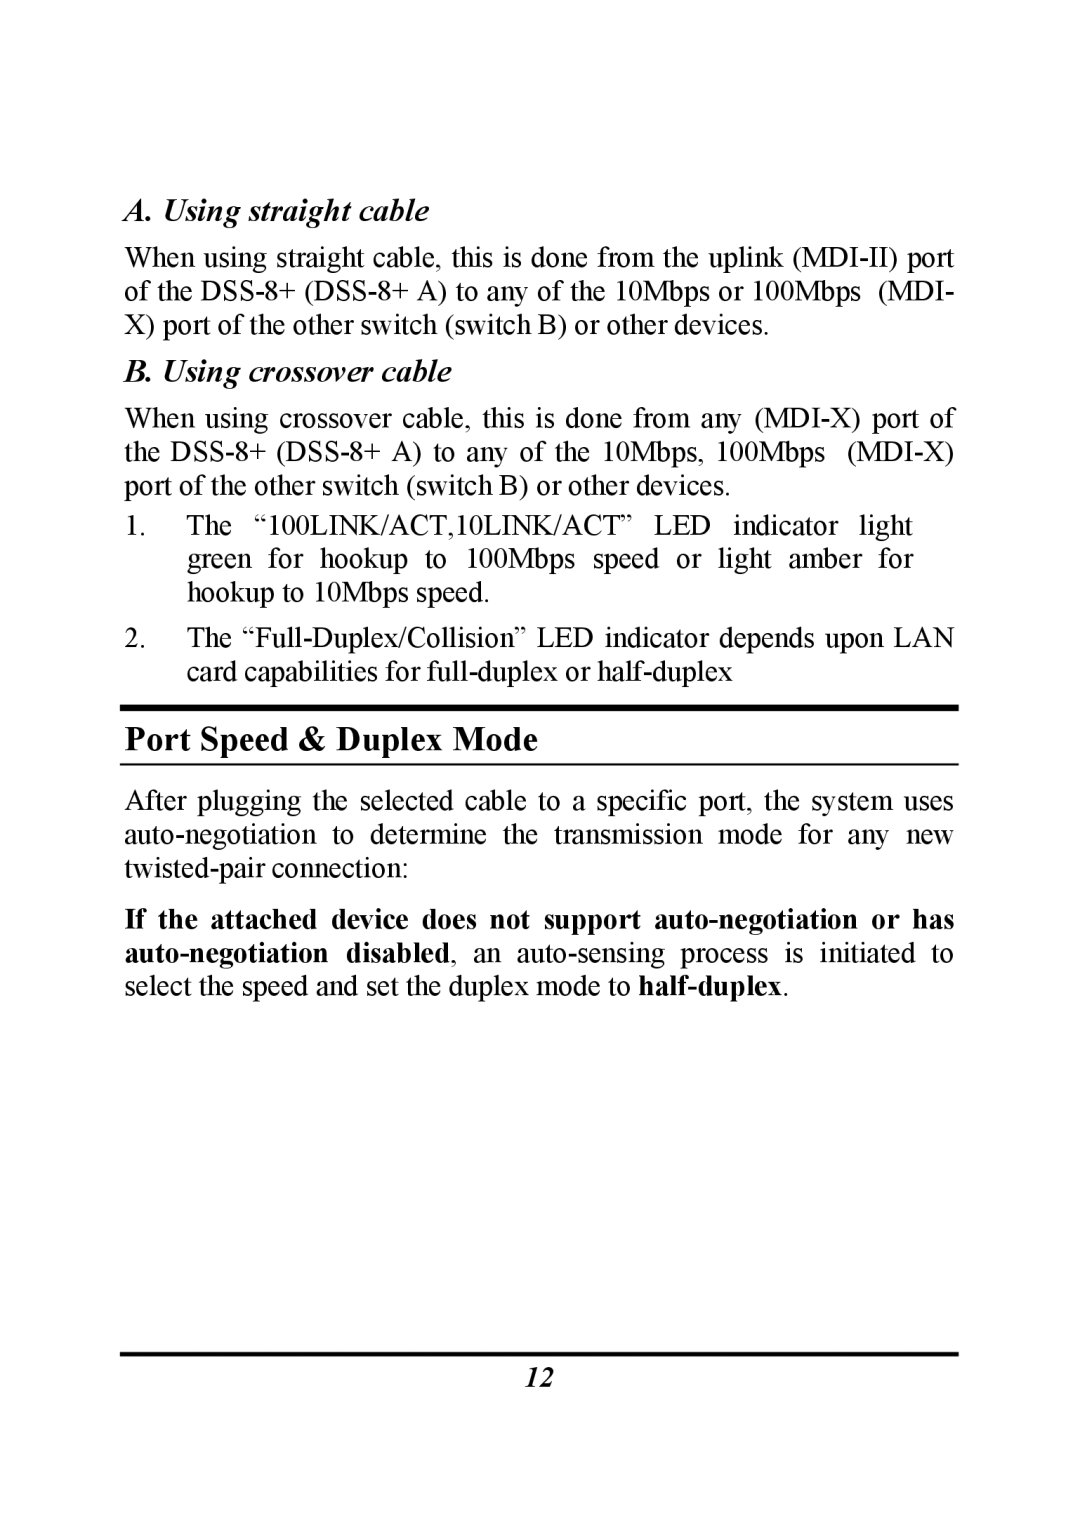 D-Link DSS-8+ manual Port Speed & Duplex Mode 